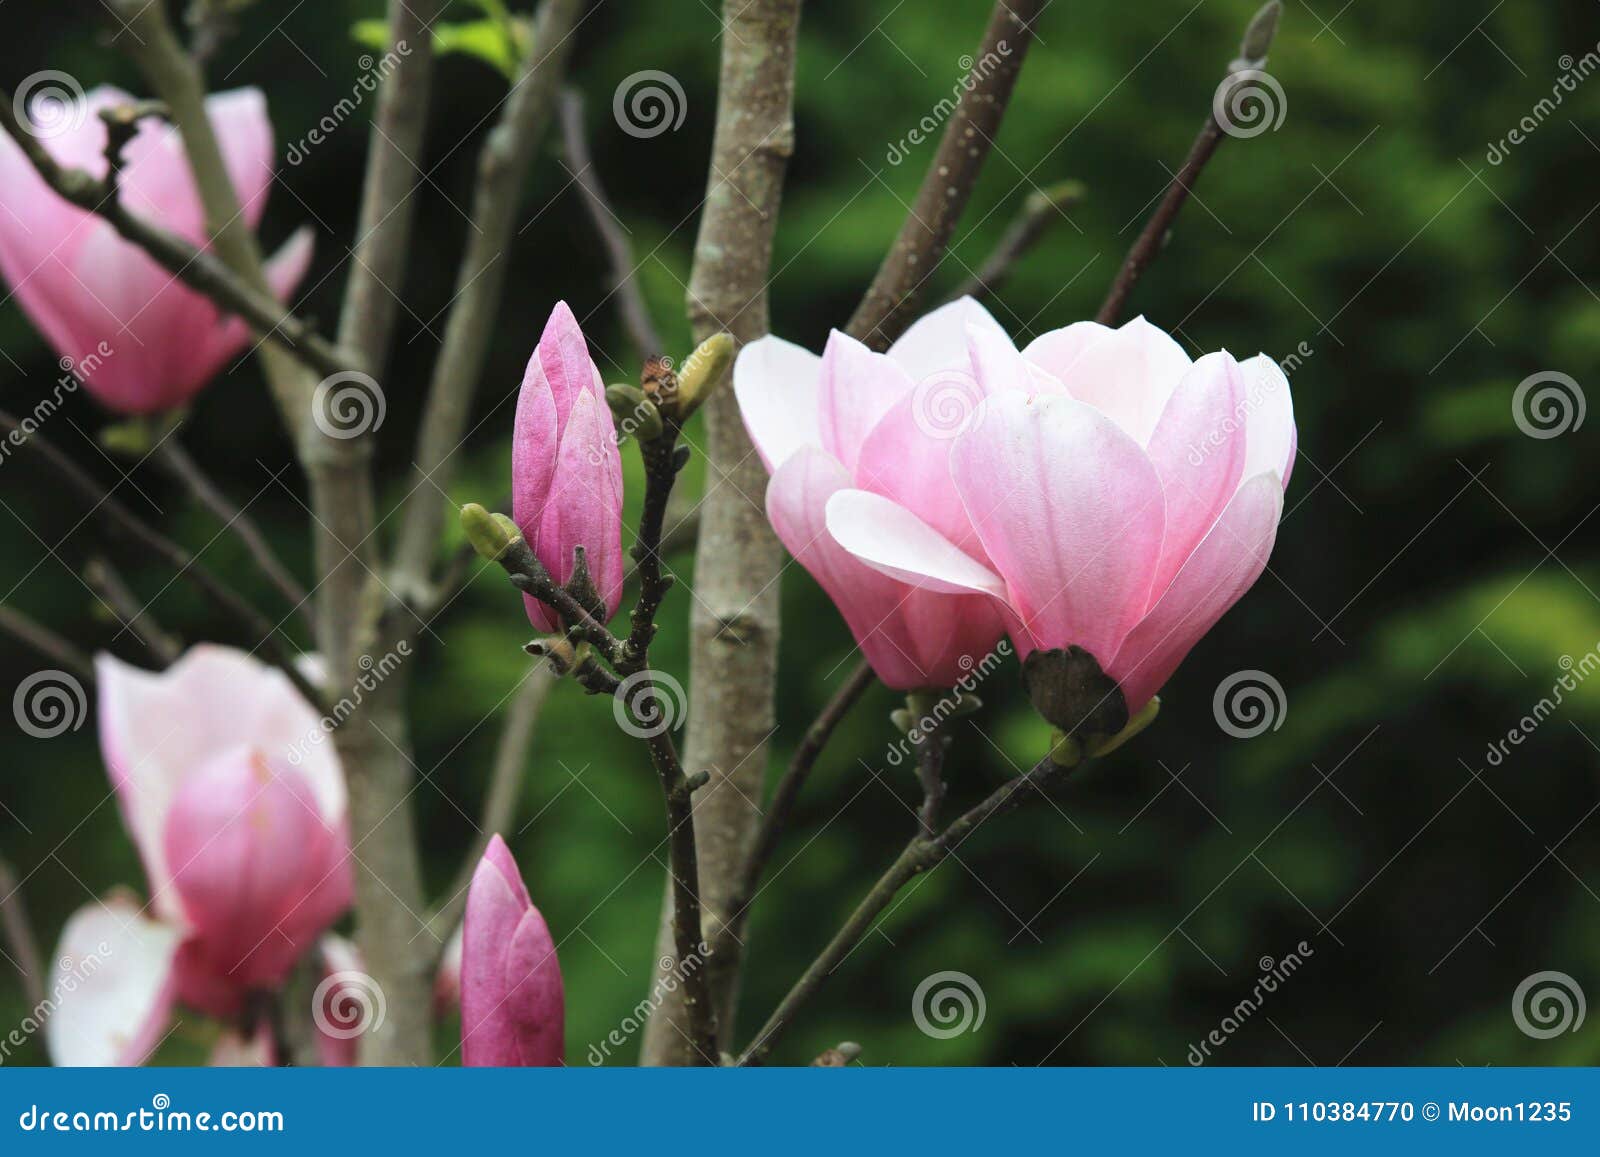 Lotus-flowered Magnolia,Large-flowered Magnolia,Southern Magnolia ...